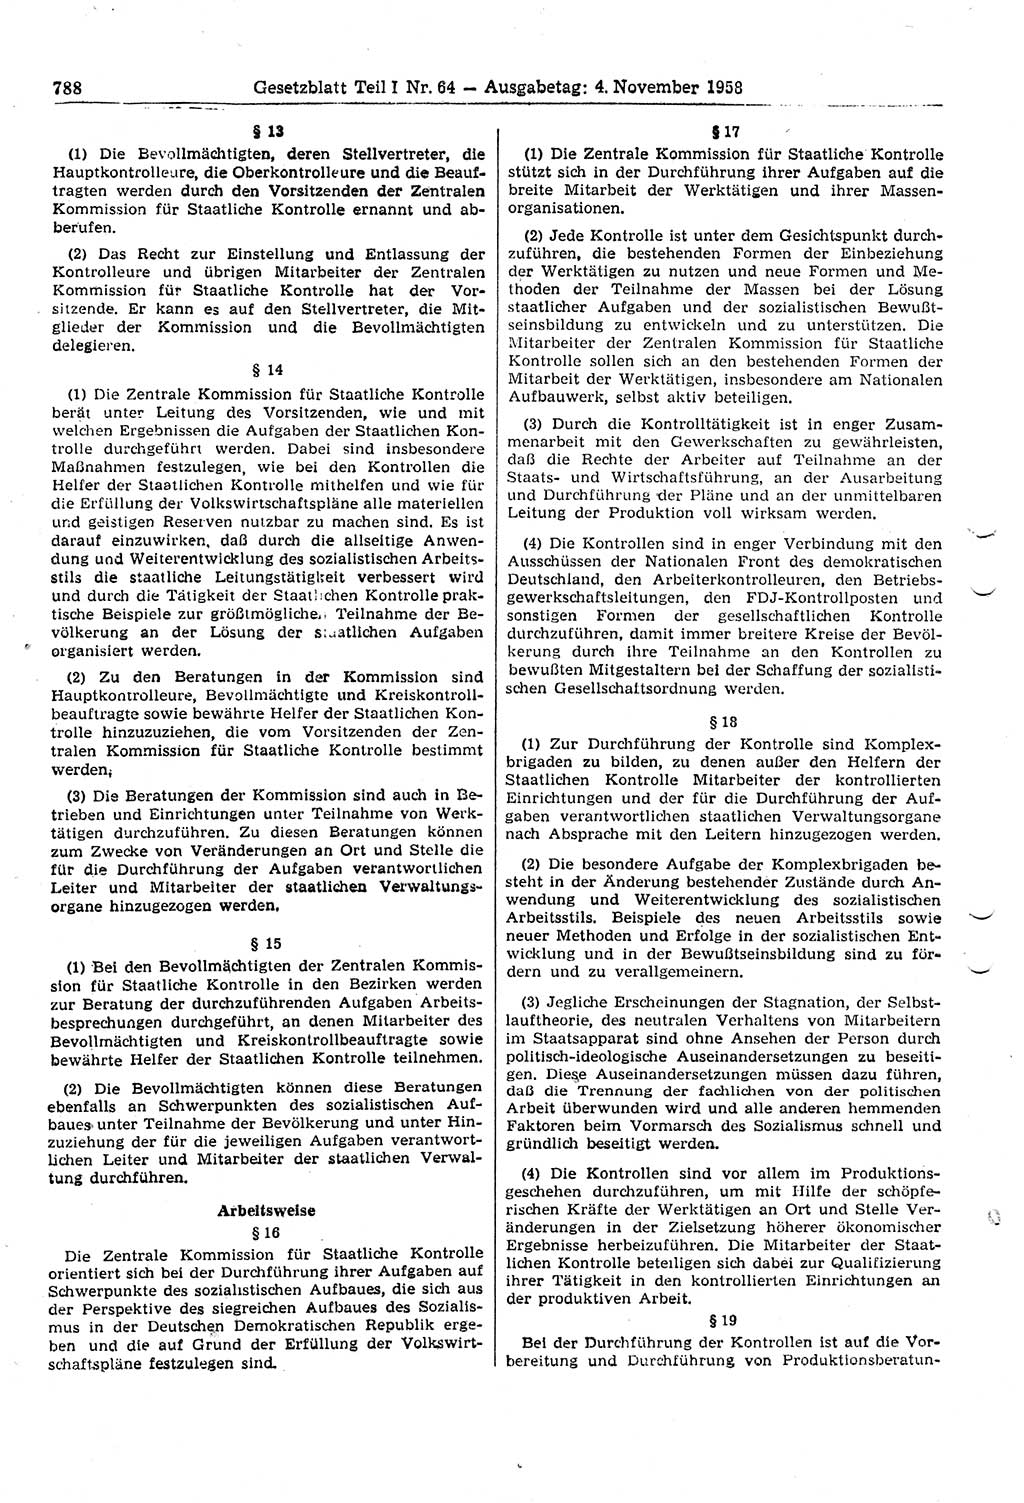 Gesetzblatt (GBl.) der Deutschen Demokratischen Republik (DDR) Teil Ⅰ 1958, Seite 788 (GBl. DDR Ⅰ 1958, S. 788)